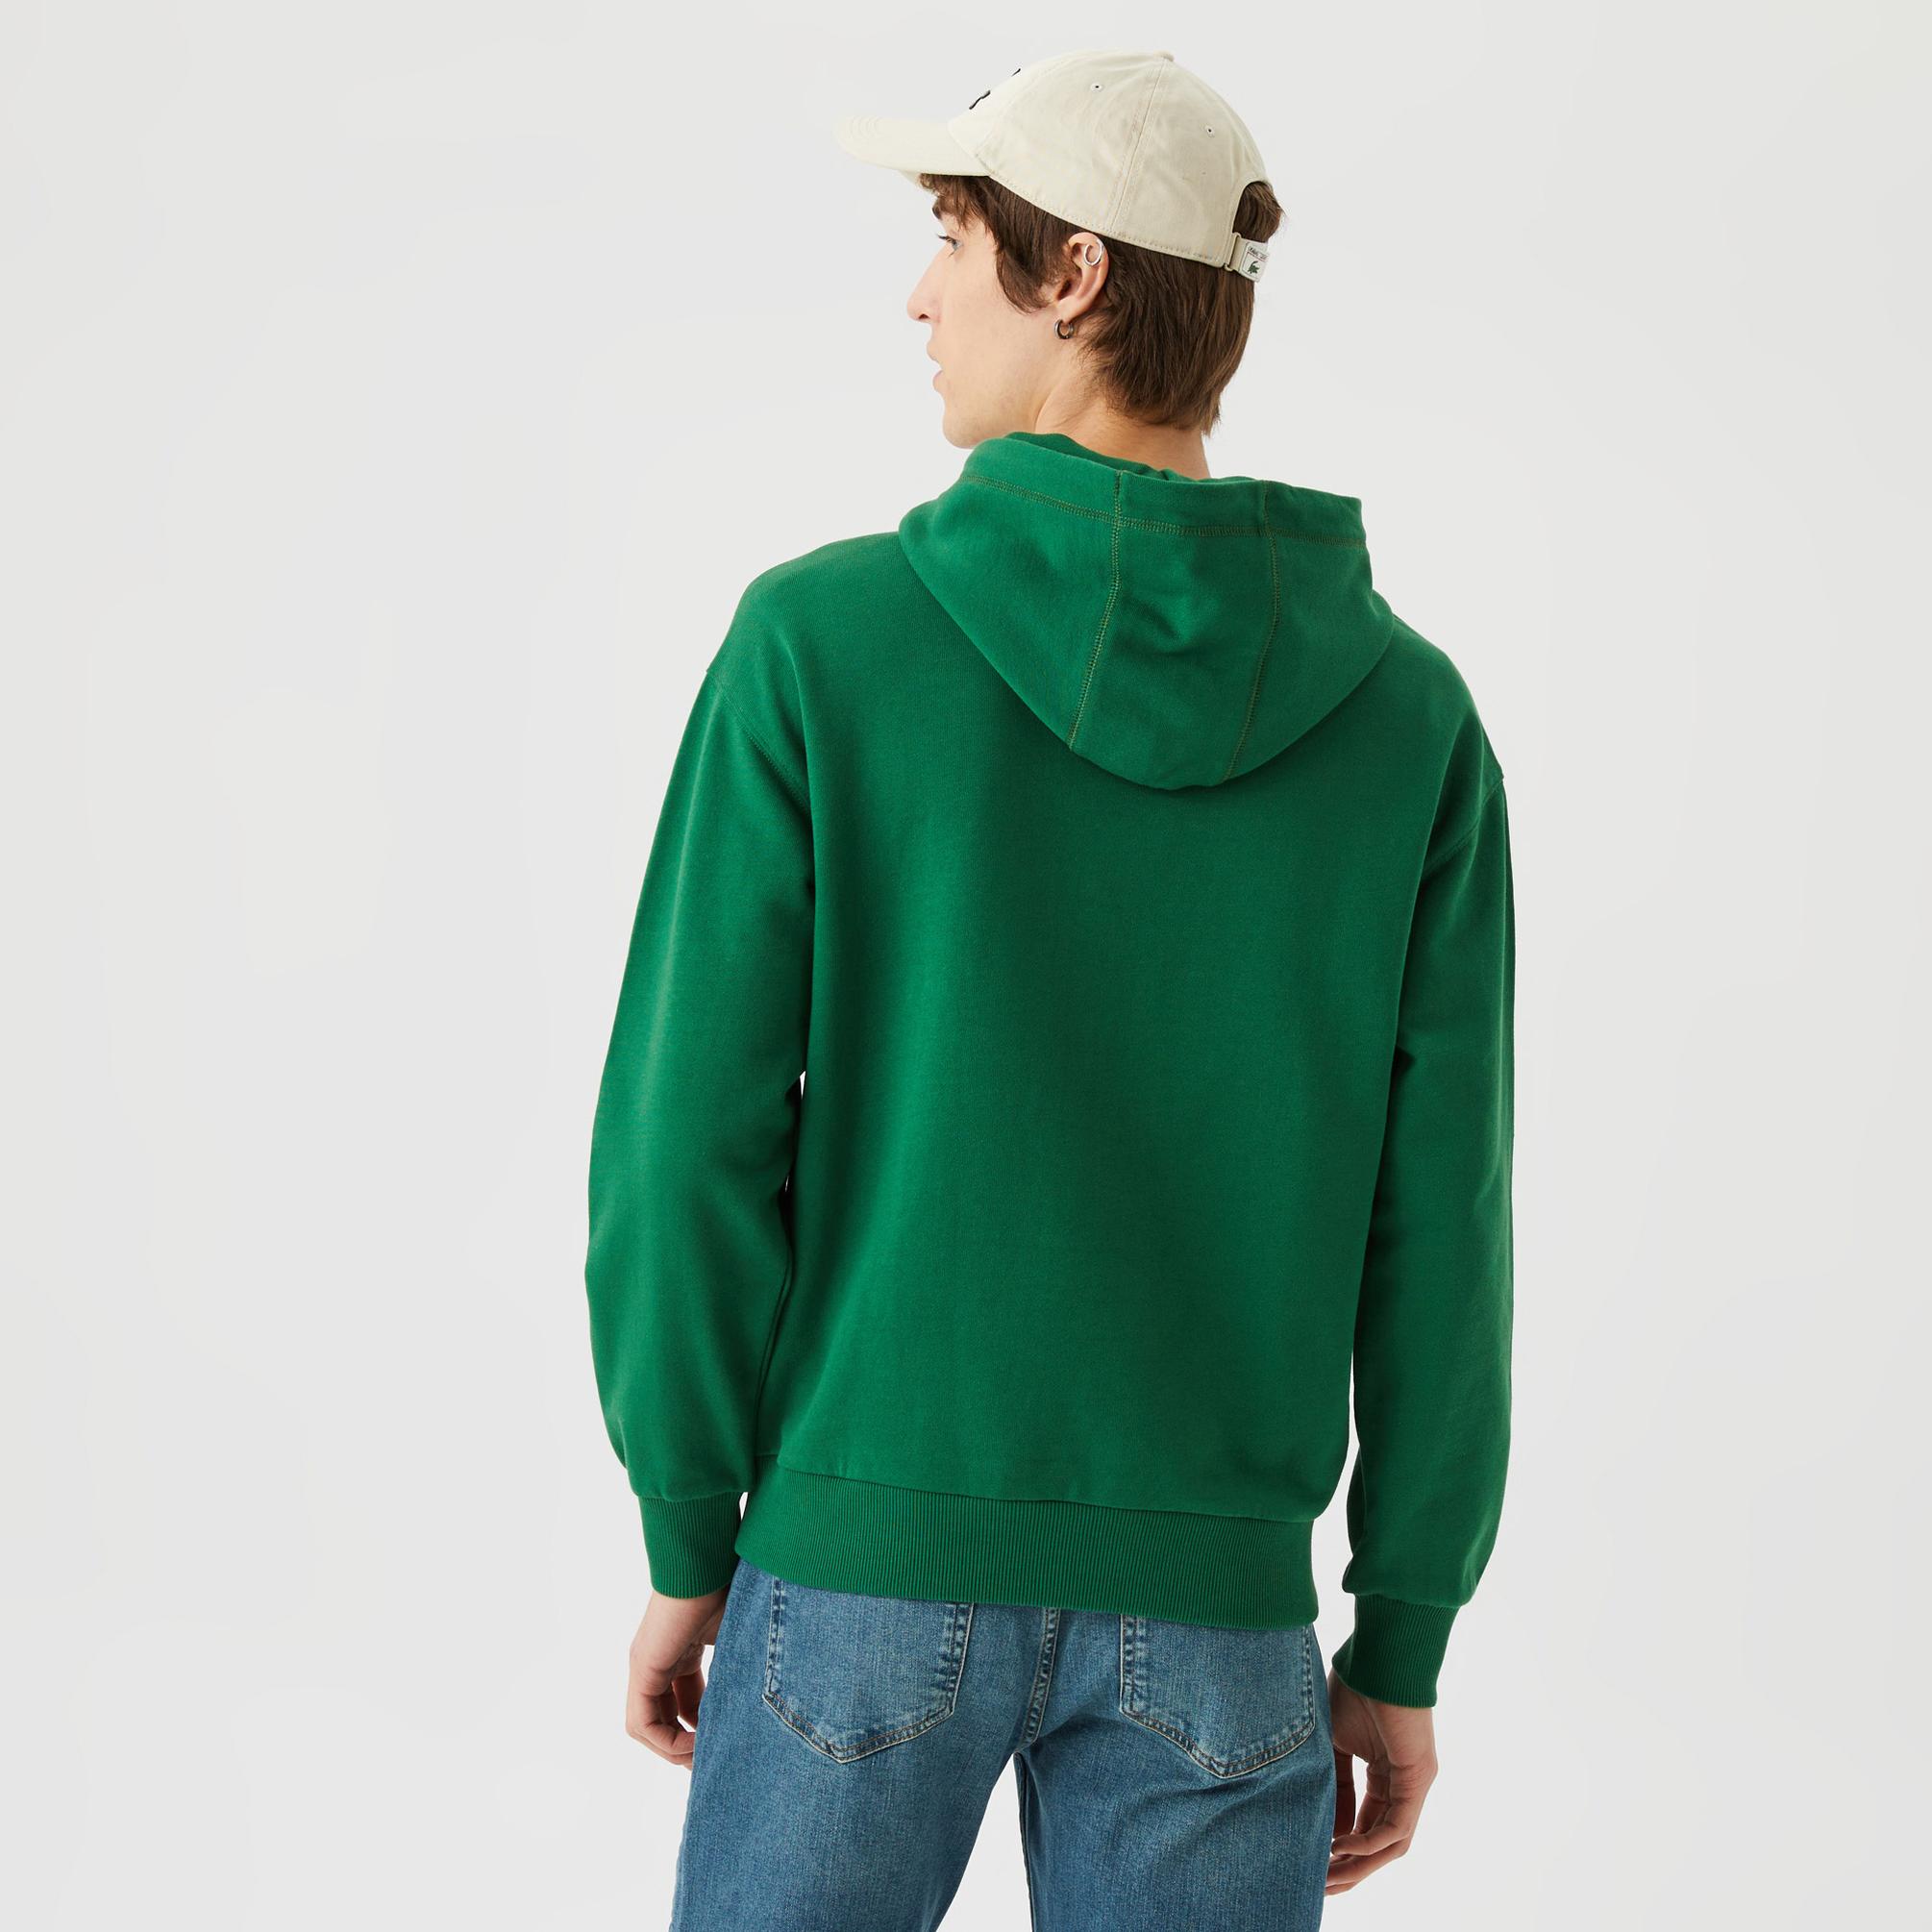  Lacoste Core Unisex Yeşil Sweatshirt